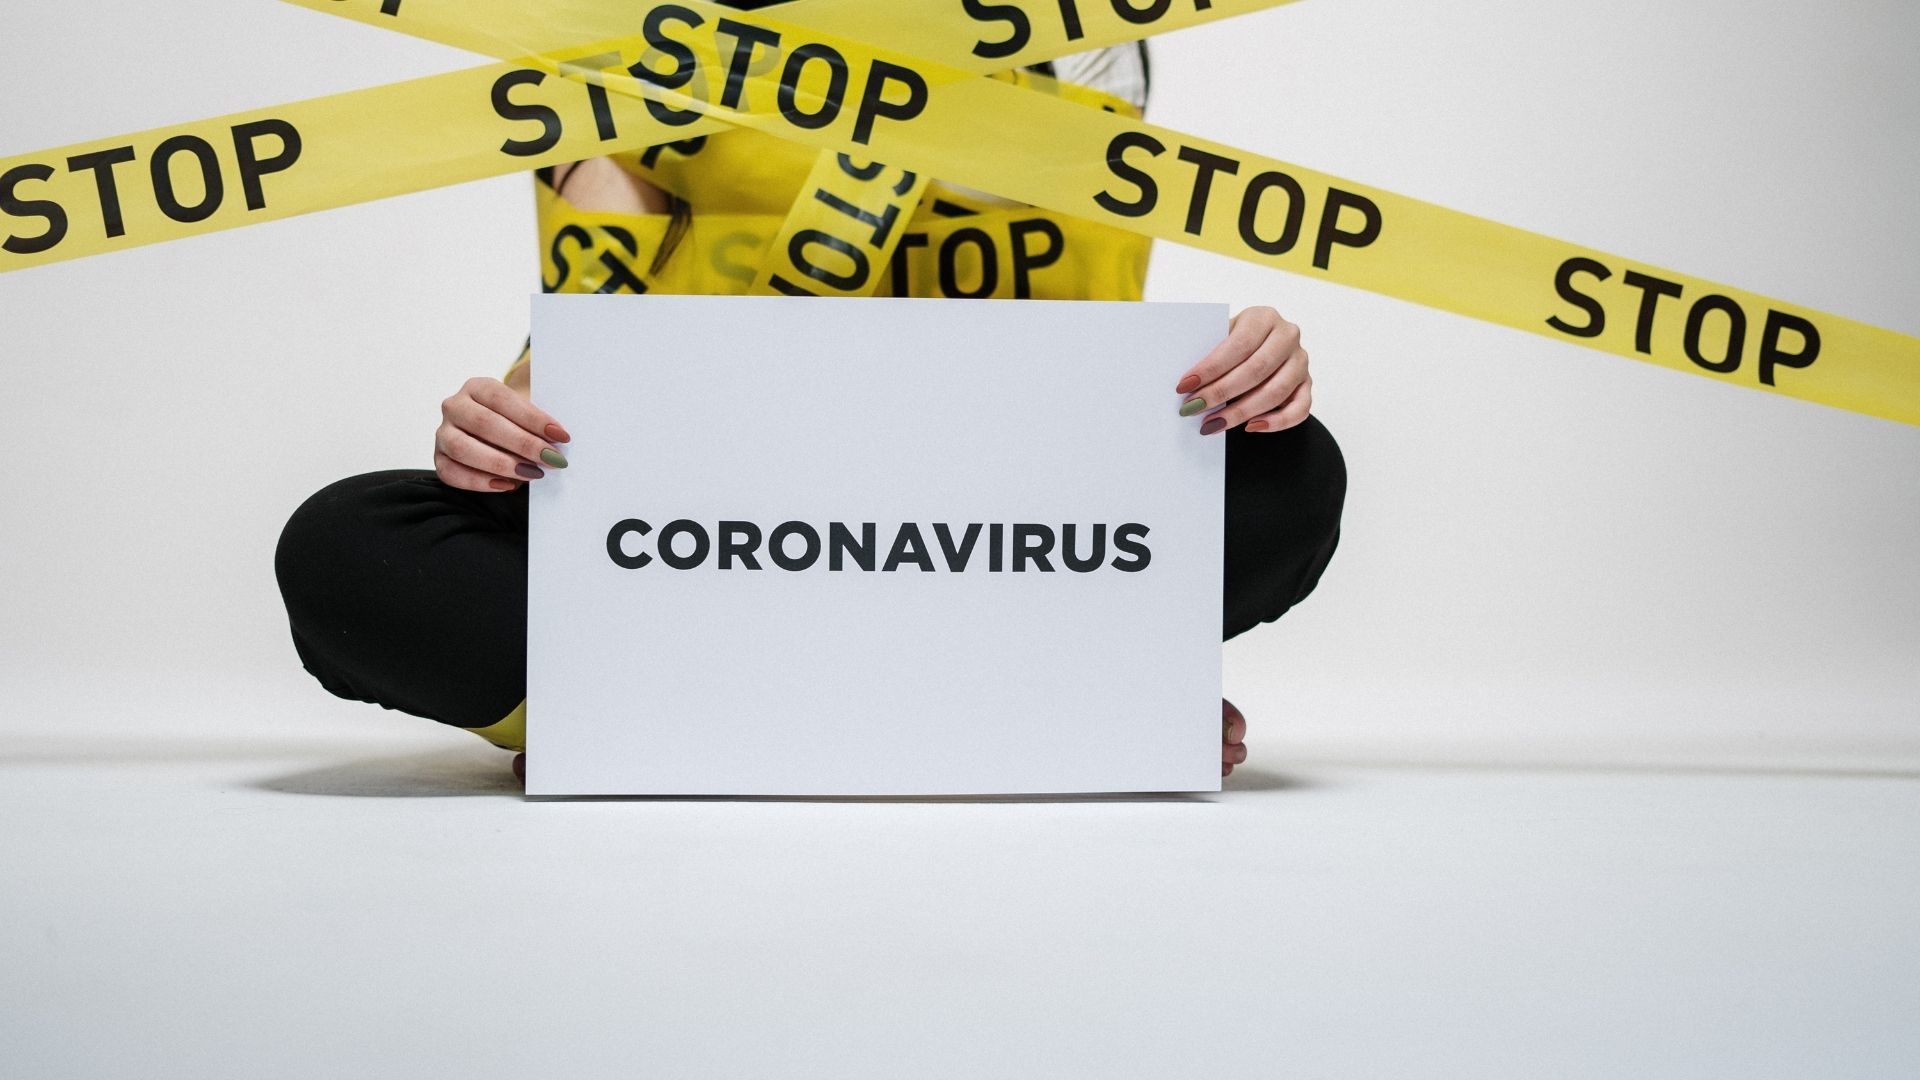 Stop Coronavirus Image